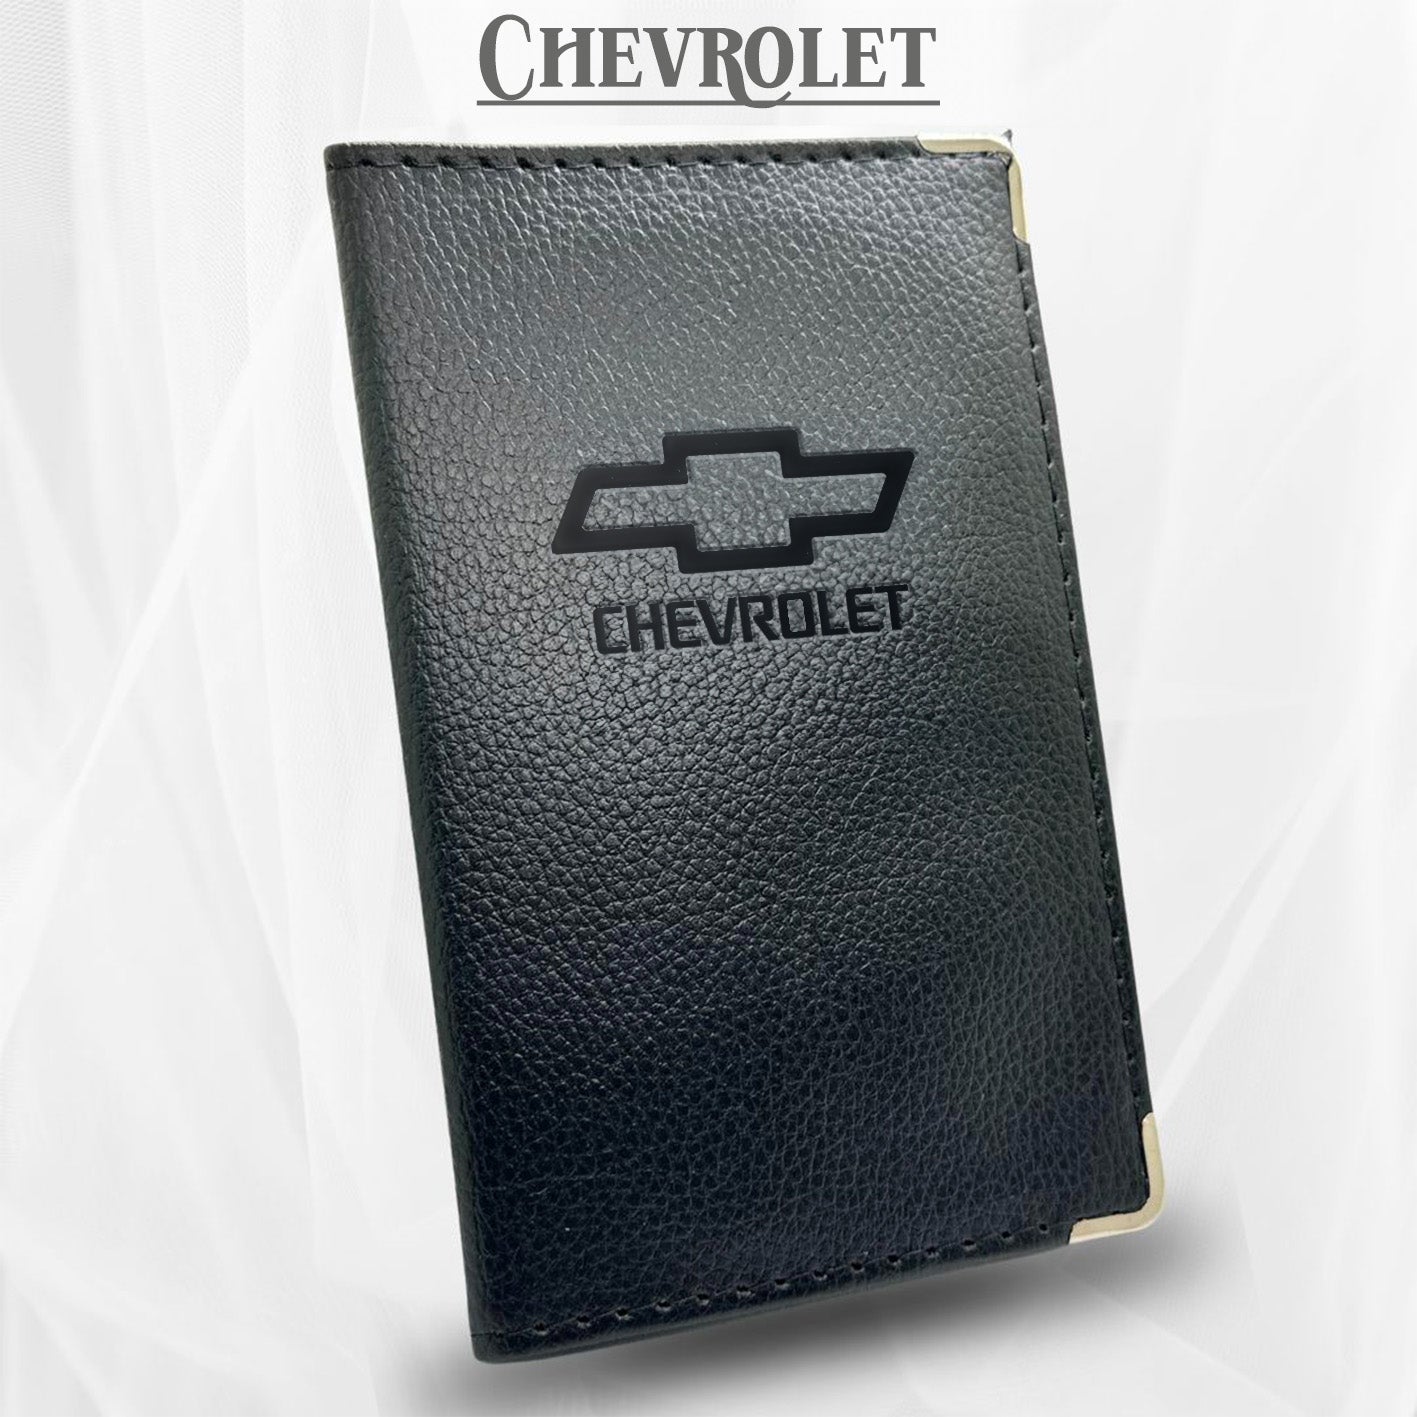 Porte carte grise Chevrolet par l'Atelier Guillot